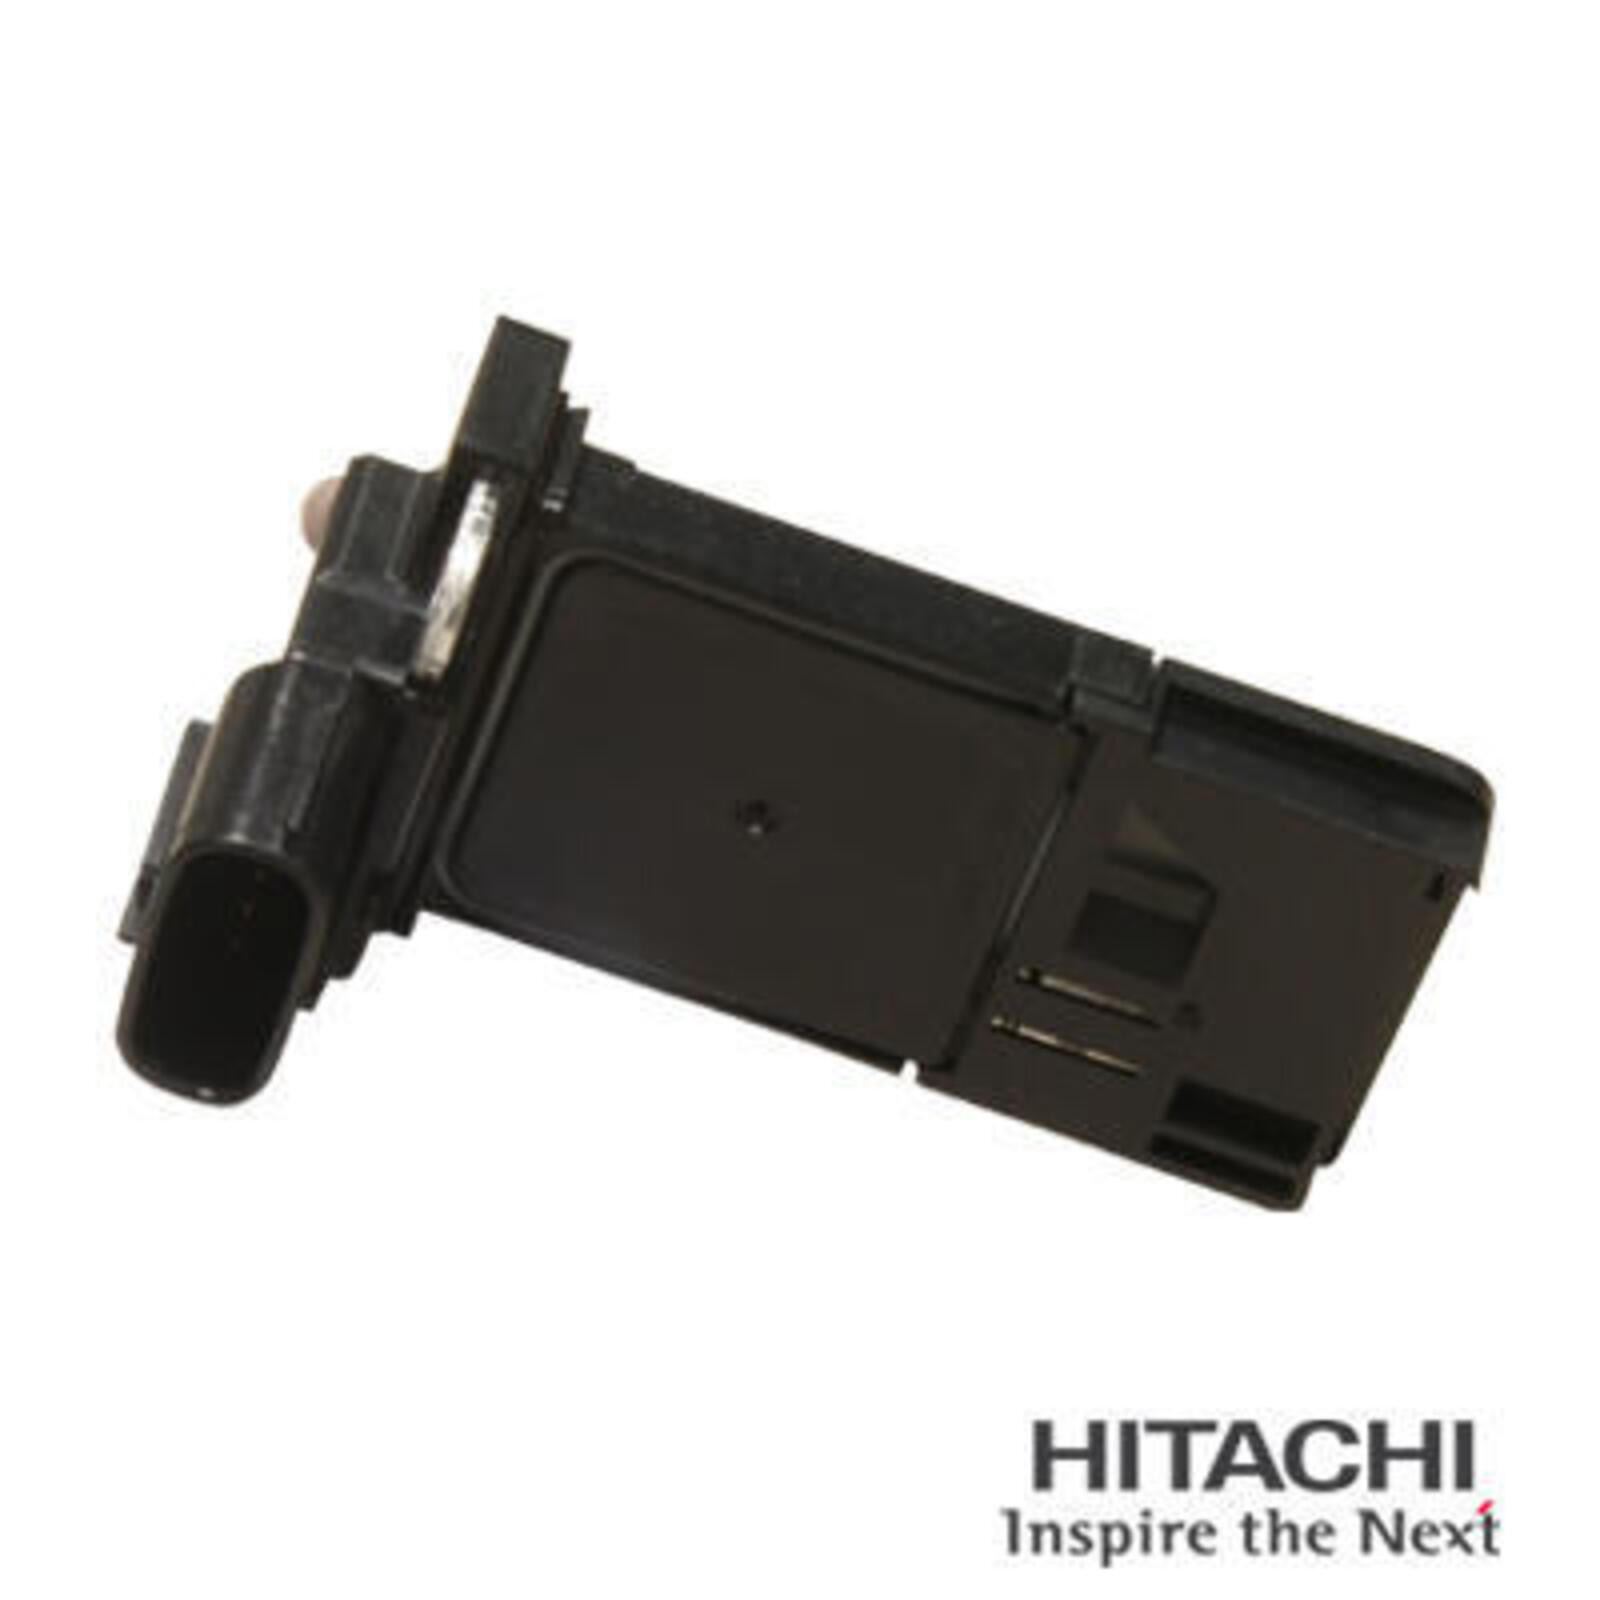 HITACHI Air Mass Sensor Original Spare Part